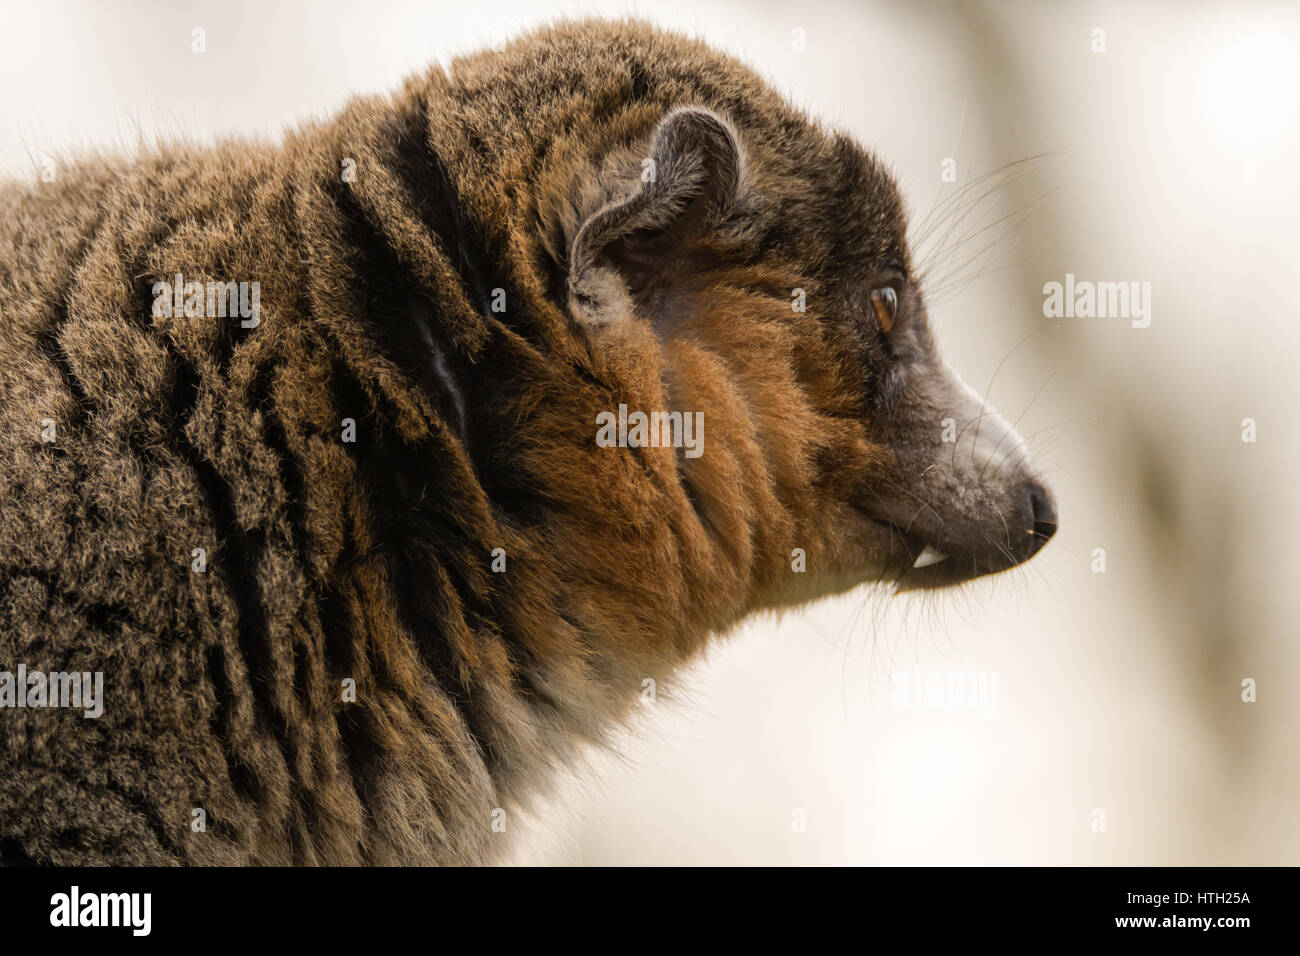 Mongoose lemur (il Eulemur mongoz) mostra canina nel profilo. Maschio primate arboree nella famiglia Lemuridae, nativo del Madagascar e delle Isole Comore Foto Stock